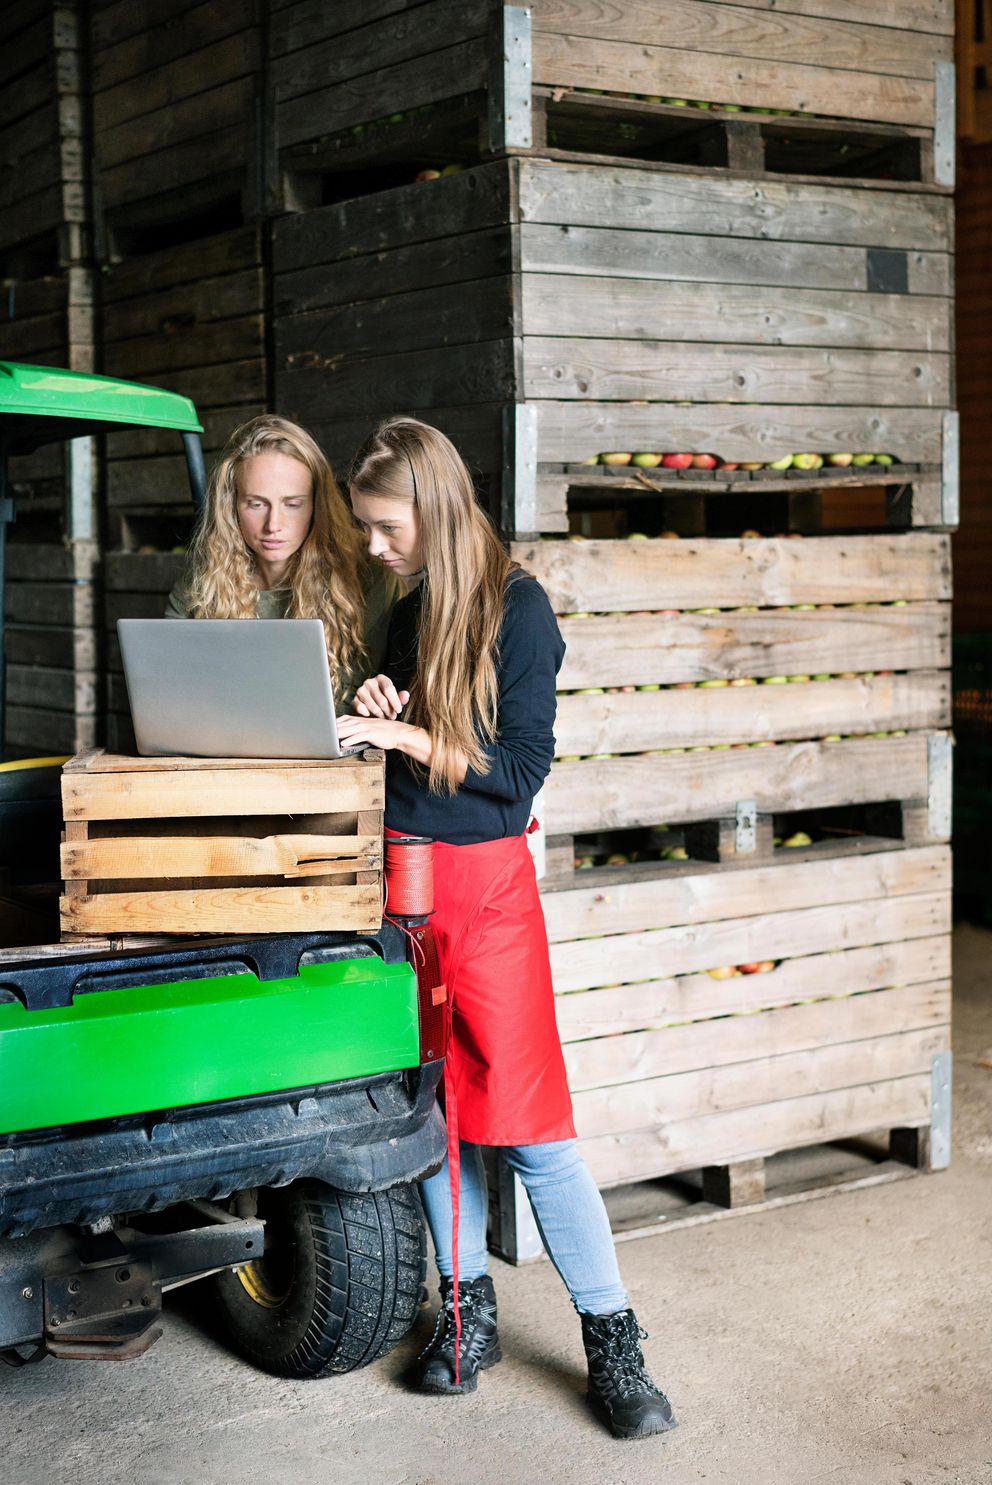 Einsatz neuer Technologien in der Landwirtschaft: Landwirtinnen arbeiten mit digitalen Medien zur Unterstützung ihres Vertriebs